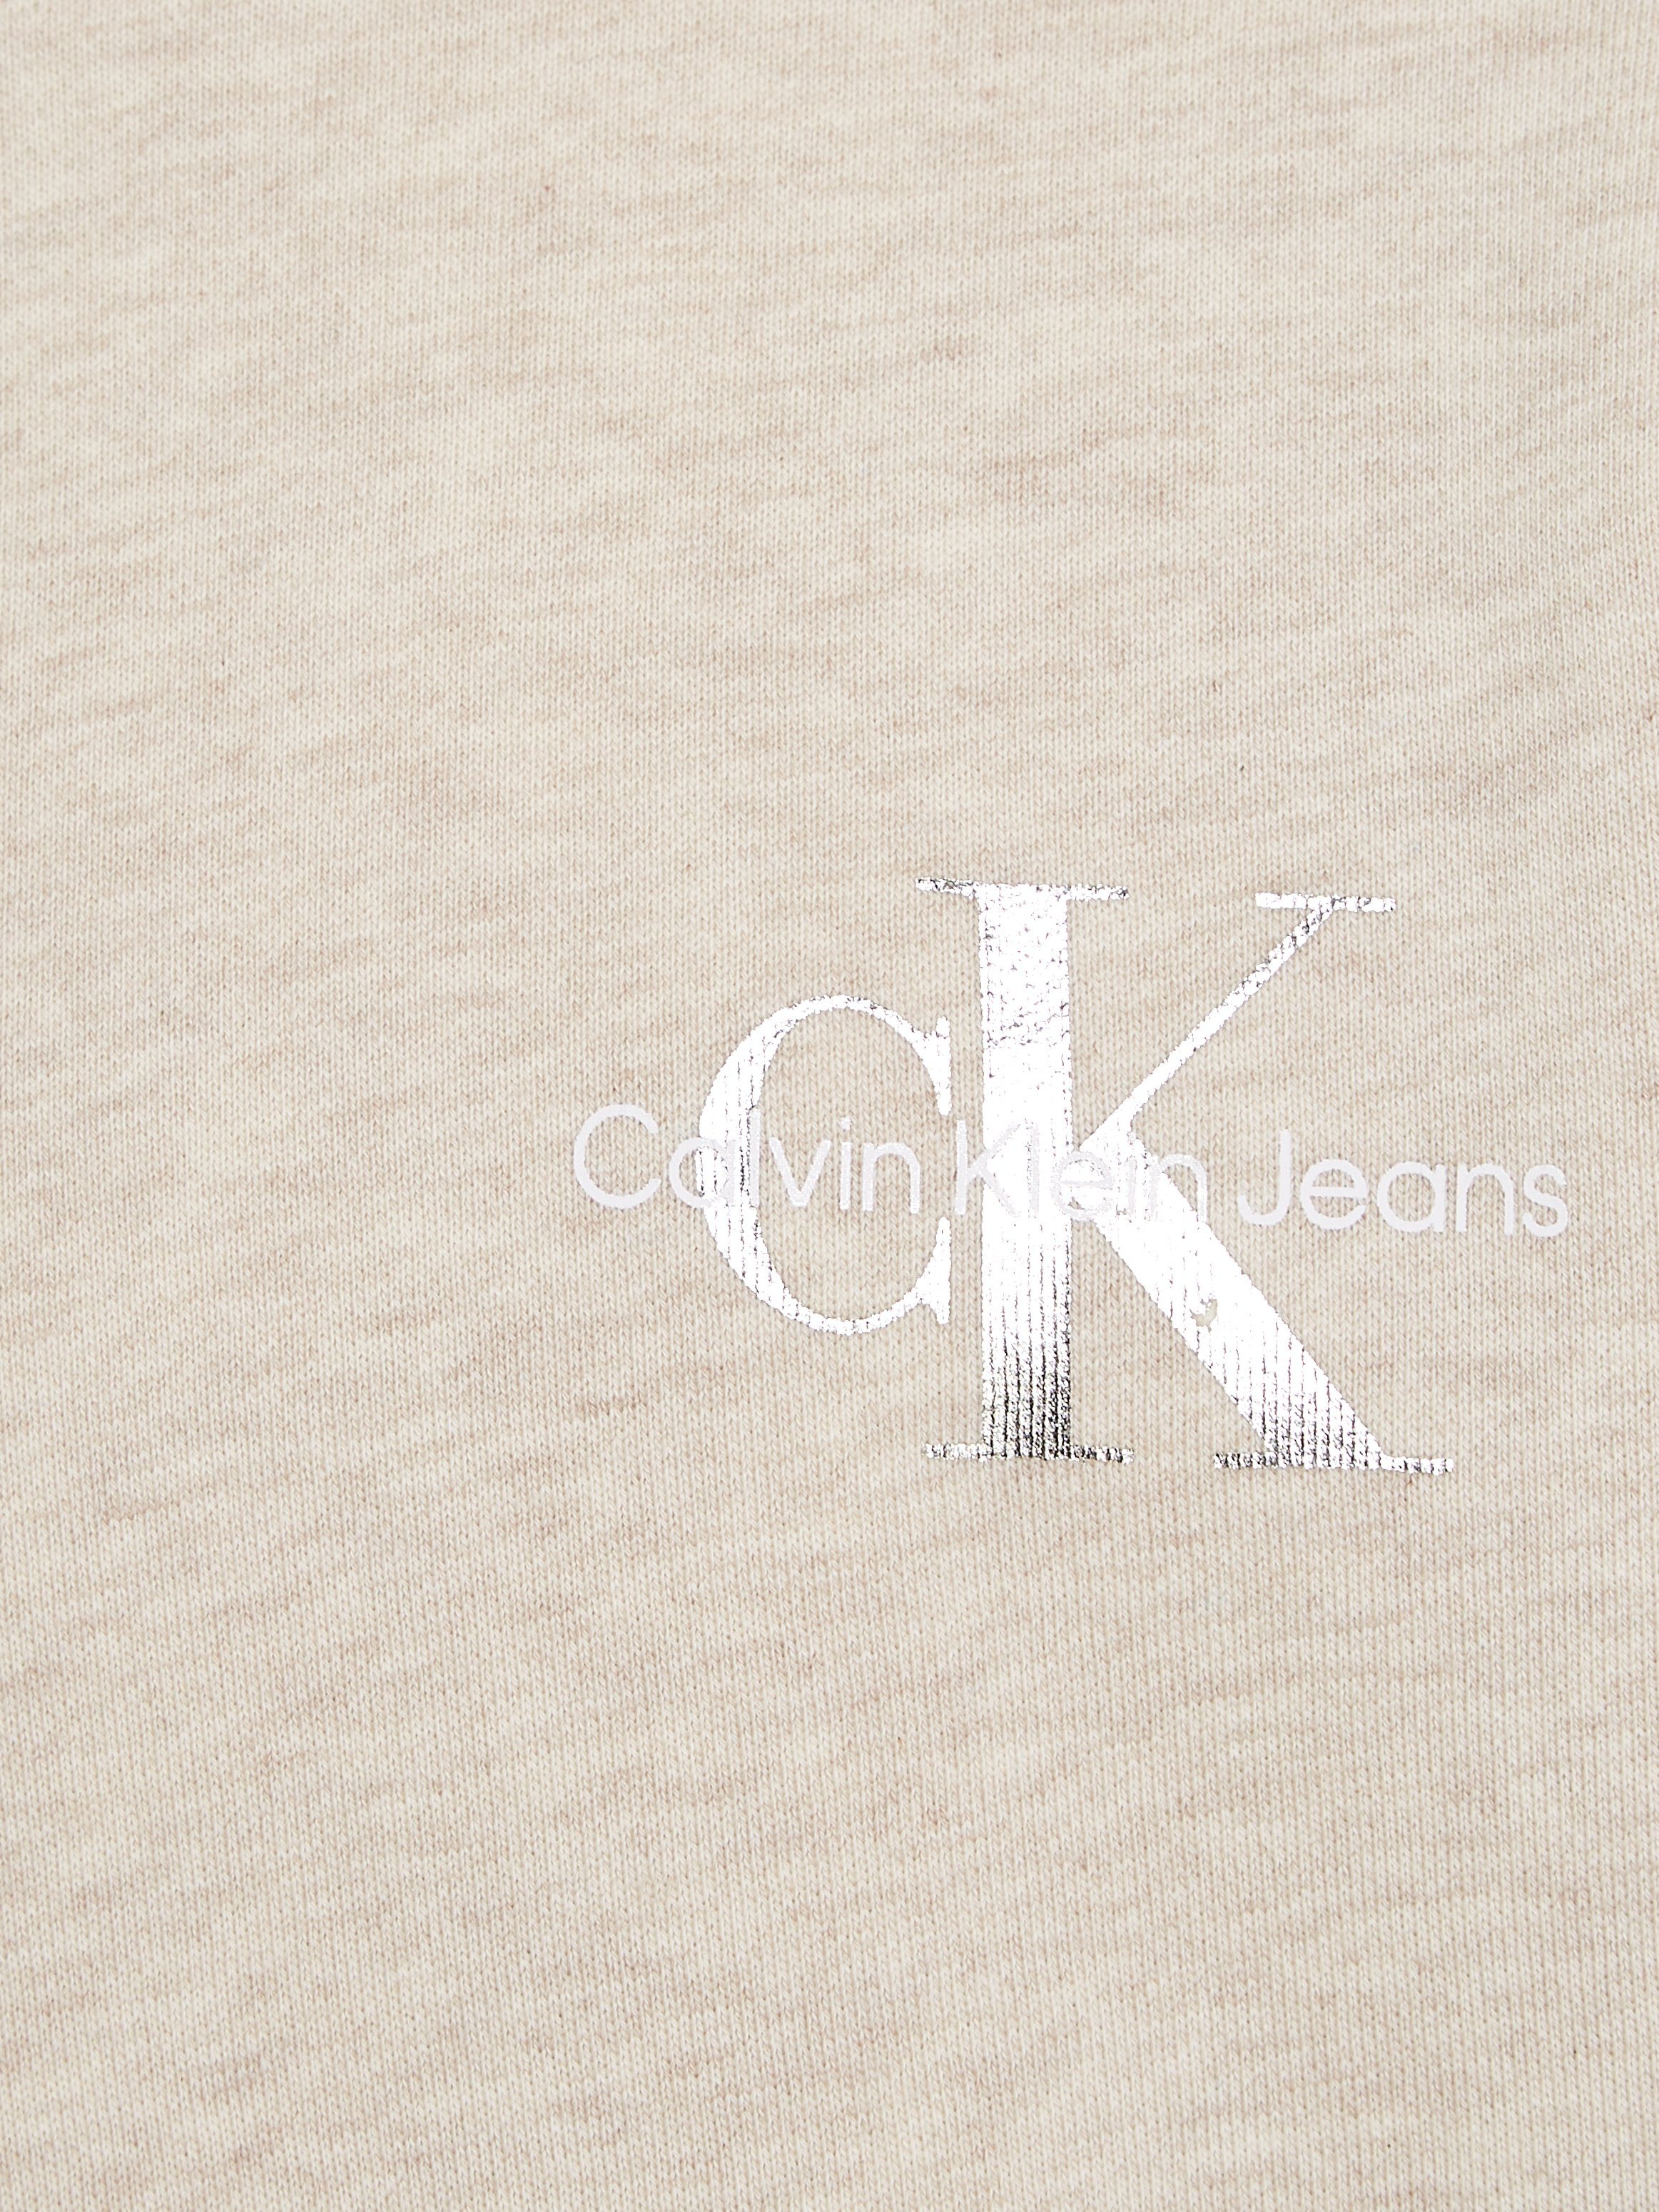 Calvin Klein Jeans Sweatshirt MONOGRAM SWEATSHIRT Logodruck CN mit Vanilla Heather